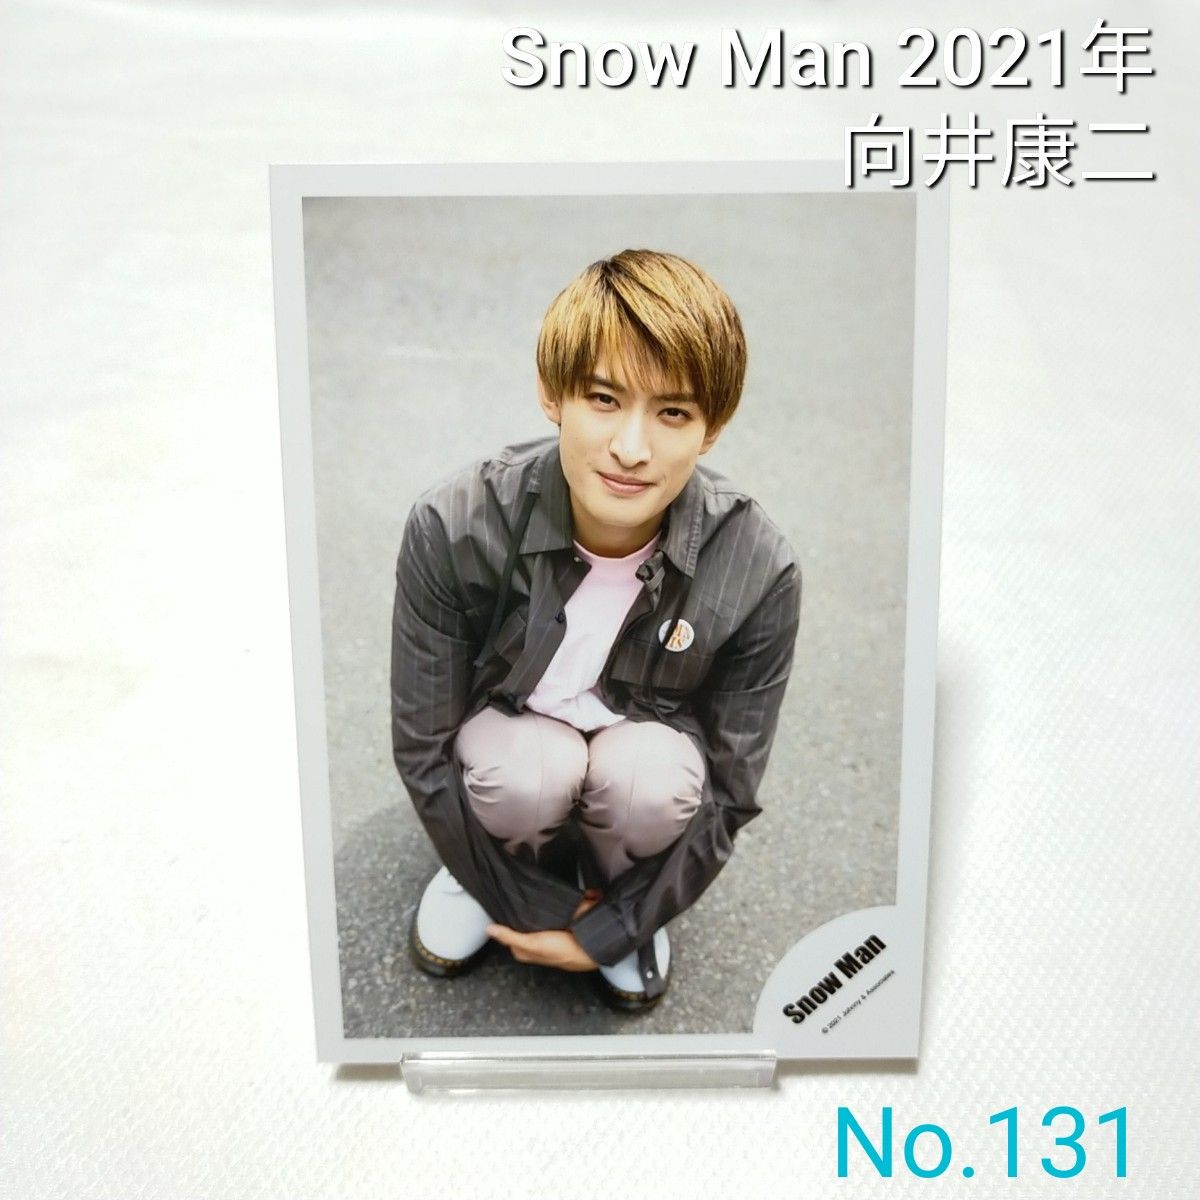 131 Snow Man 向井康二 公式写真 スノーマン 2021年